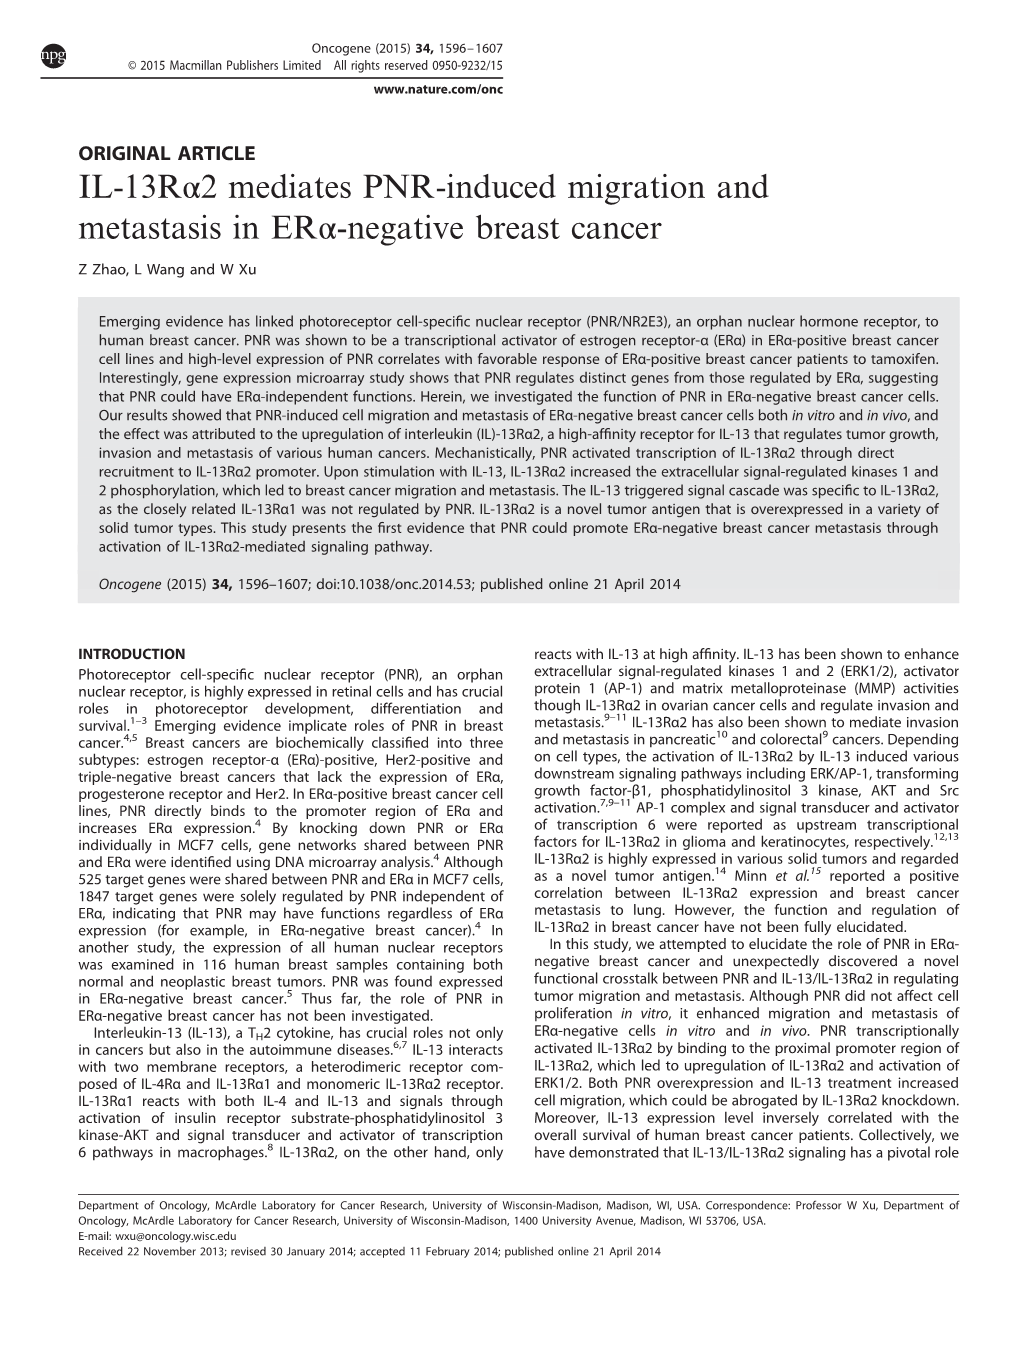 2 Mediates PNR-Induced Migration and Metastasis in ER&Alpha